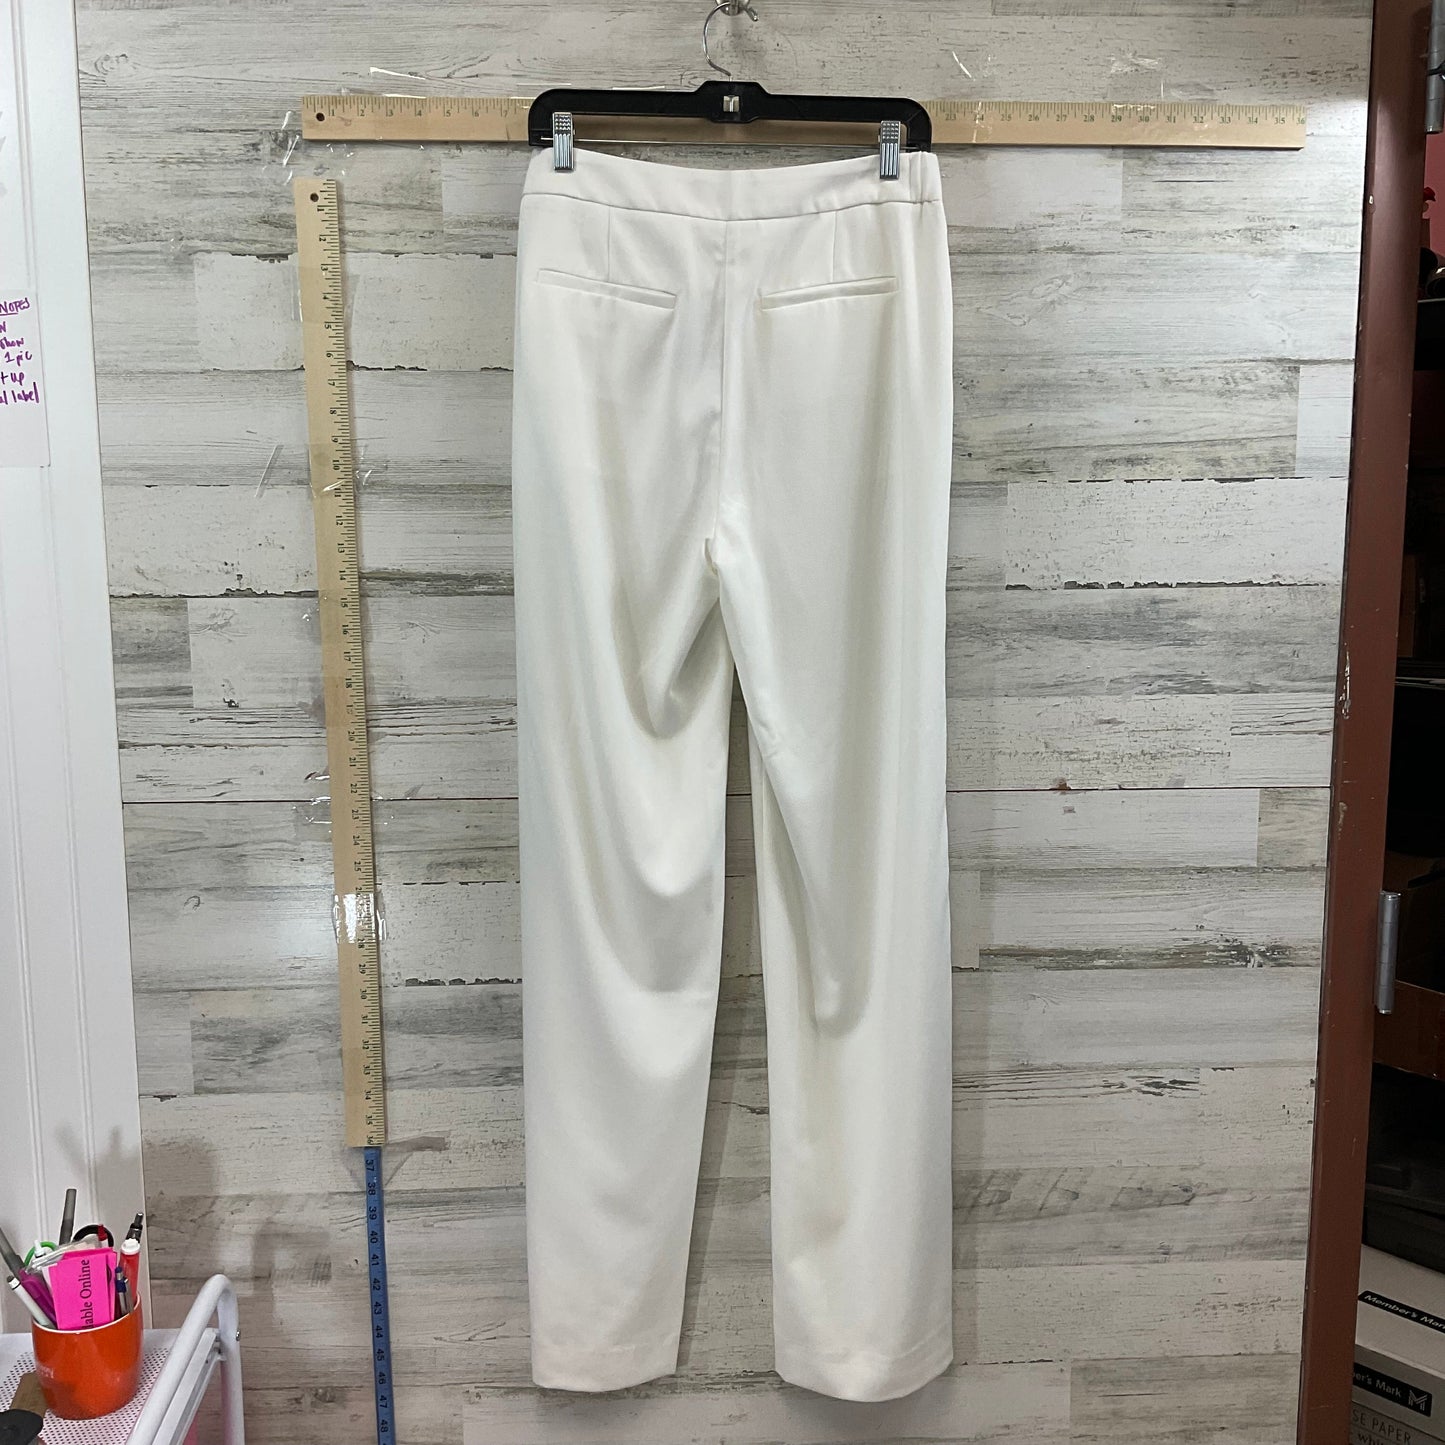 White Pants Dress Banana Republic, Size 8l